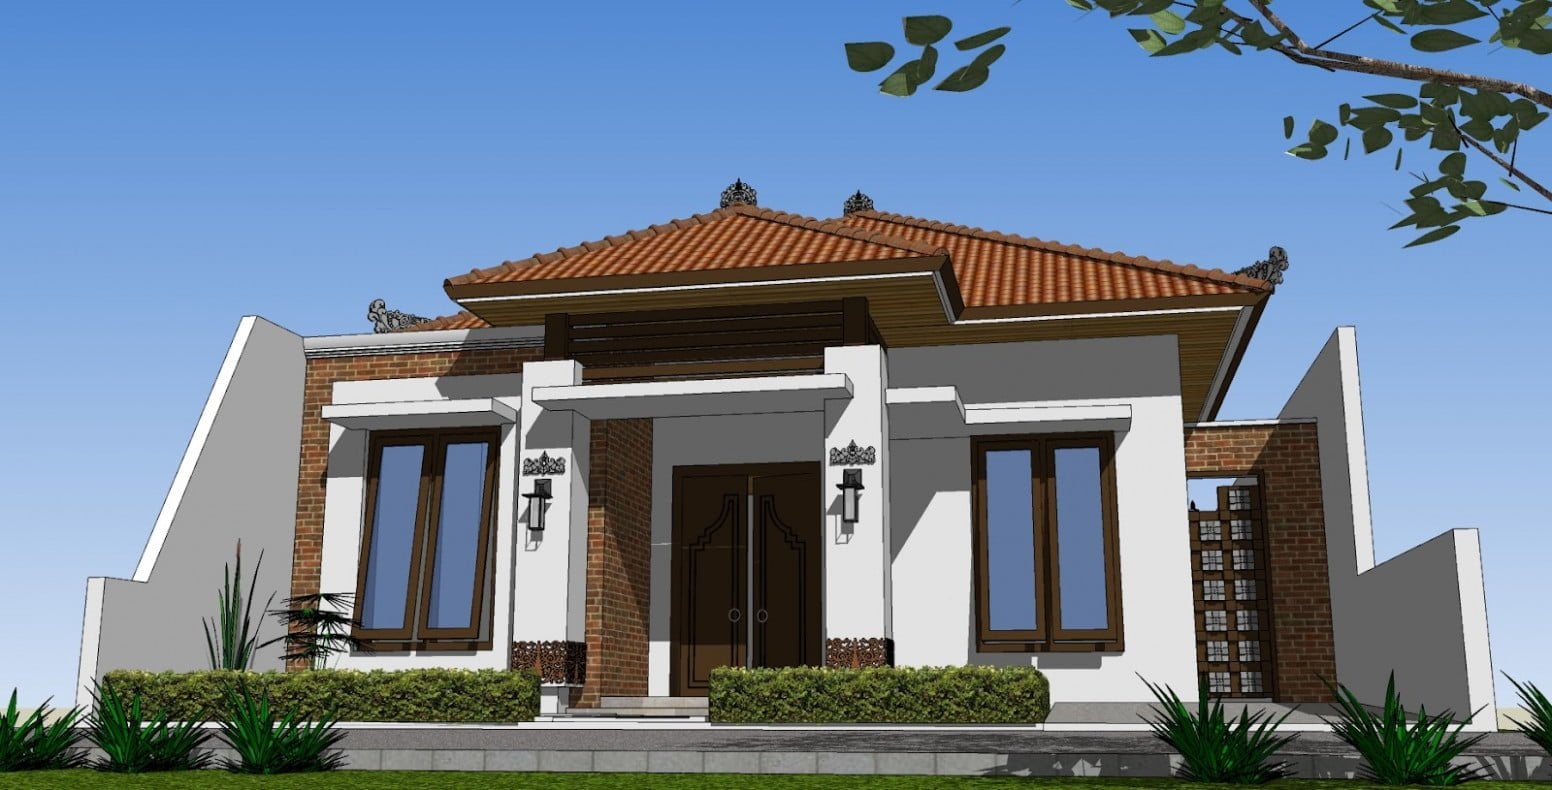 Kemewahan Desain Rumah Minimalis Joglo 42 Dalam Ide Dekorasi Rumah dengan Desain Rumah Minimalis Joglo